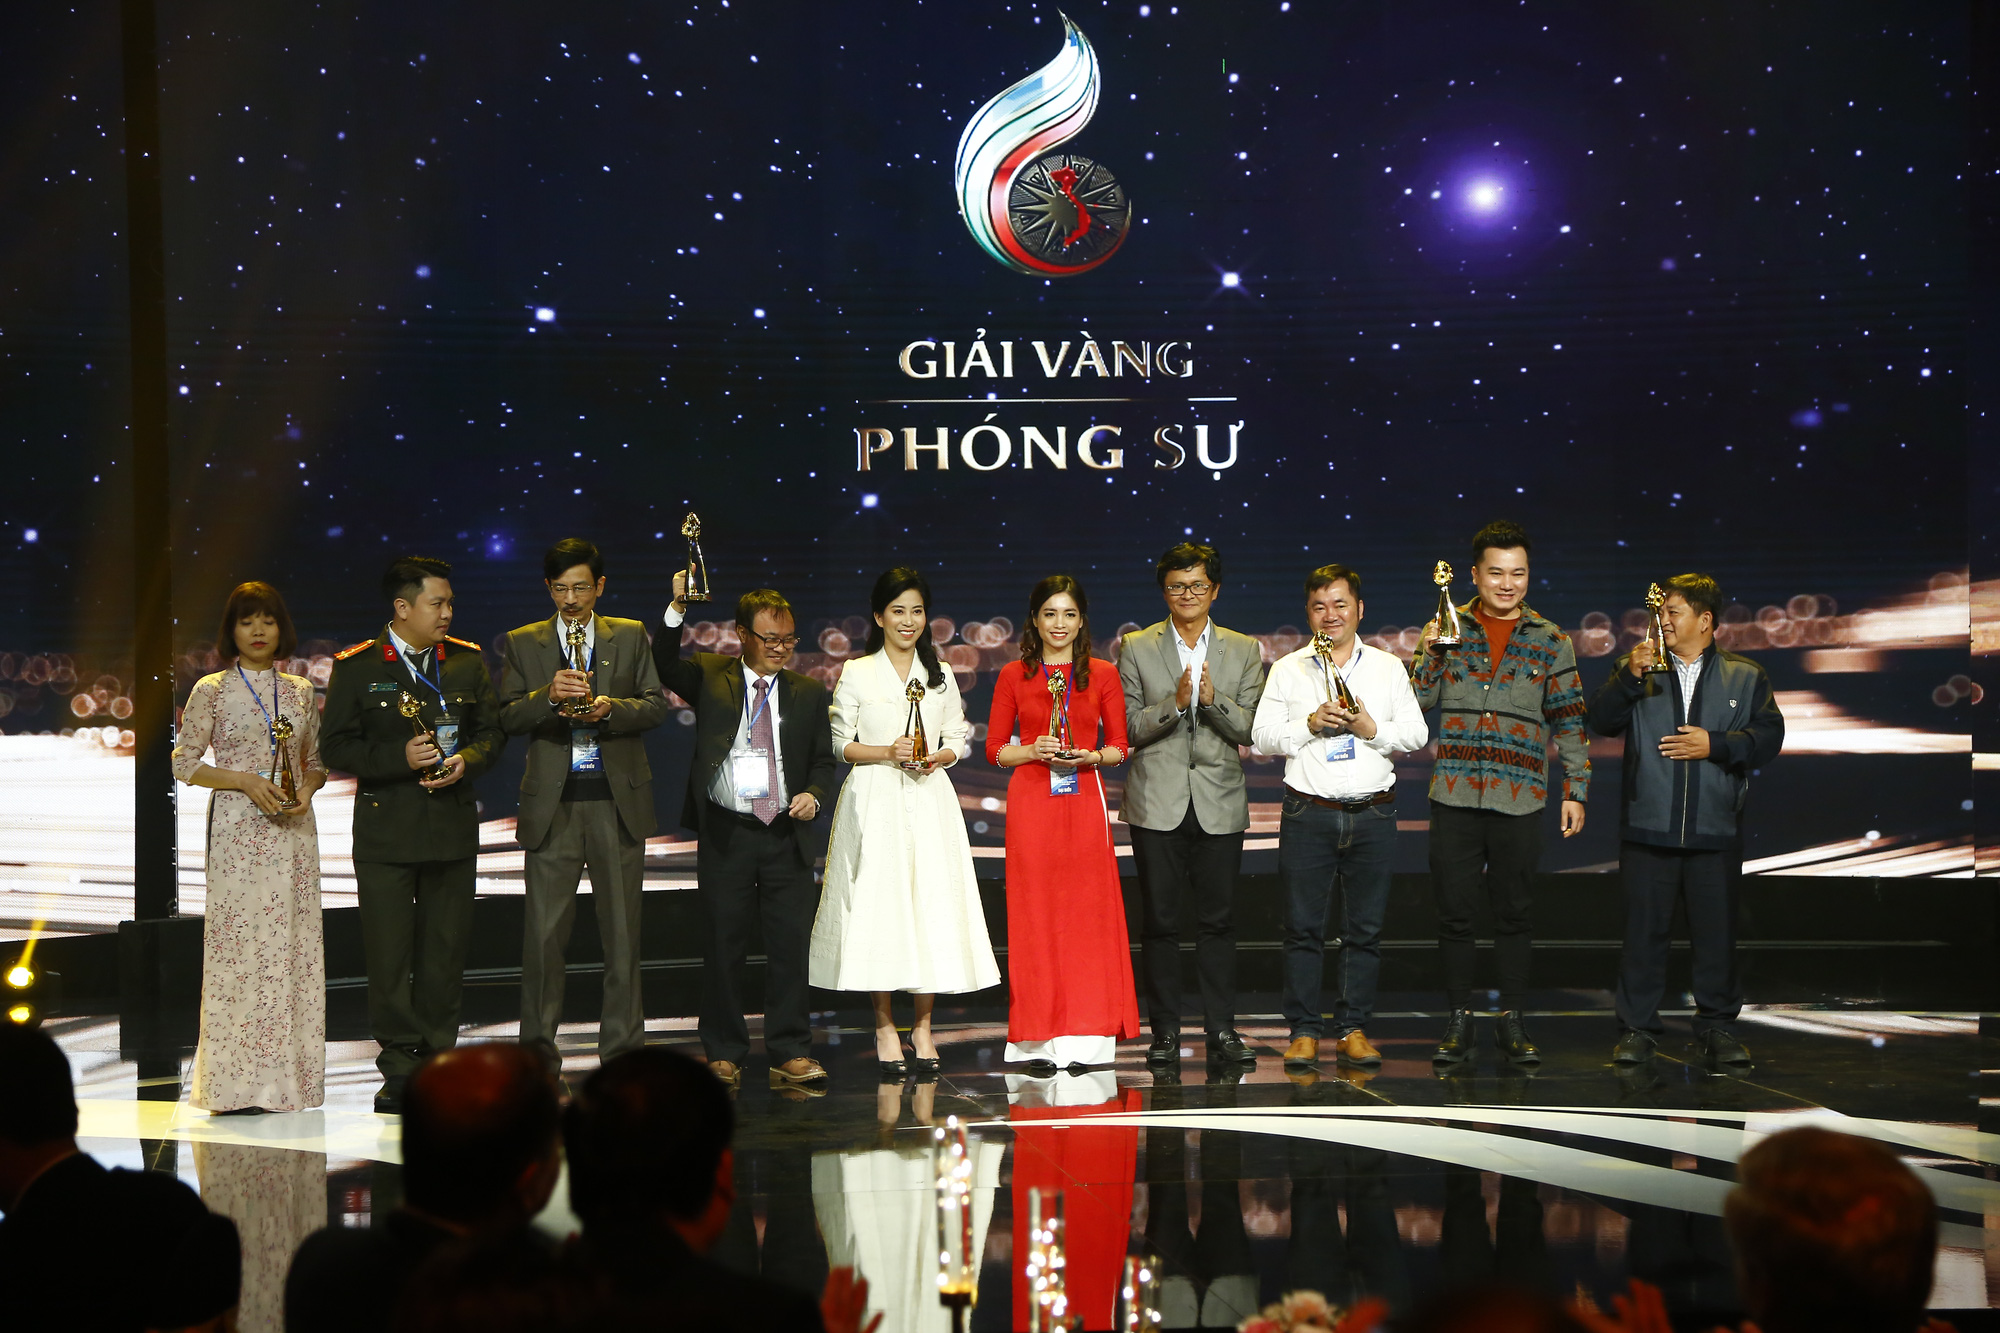 Tổng Giám đốc Đài Truyền hình Việt Nam Trần Bình Minh trao giải Vàng cho các tác giả ở thể loại phóng sự